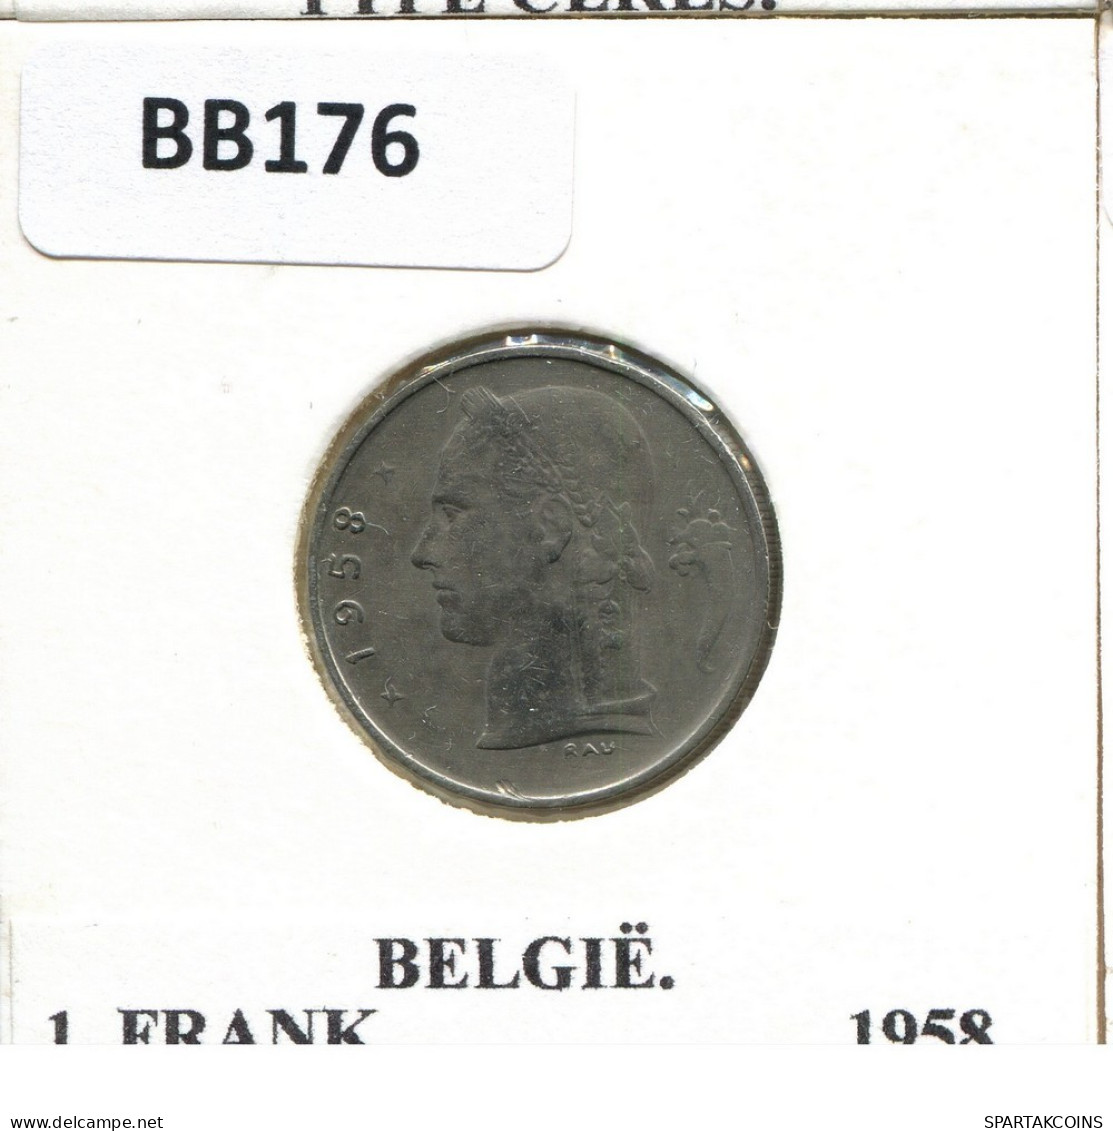 1 FRANC 1958 DUTCH Text BELGIQUE BELGIUM Pièce #BB176.F.A - 1 Franc